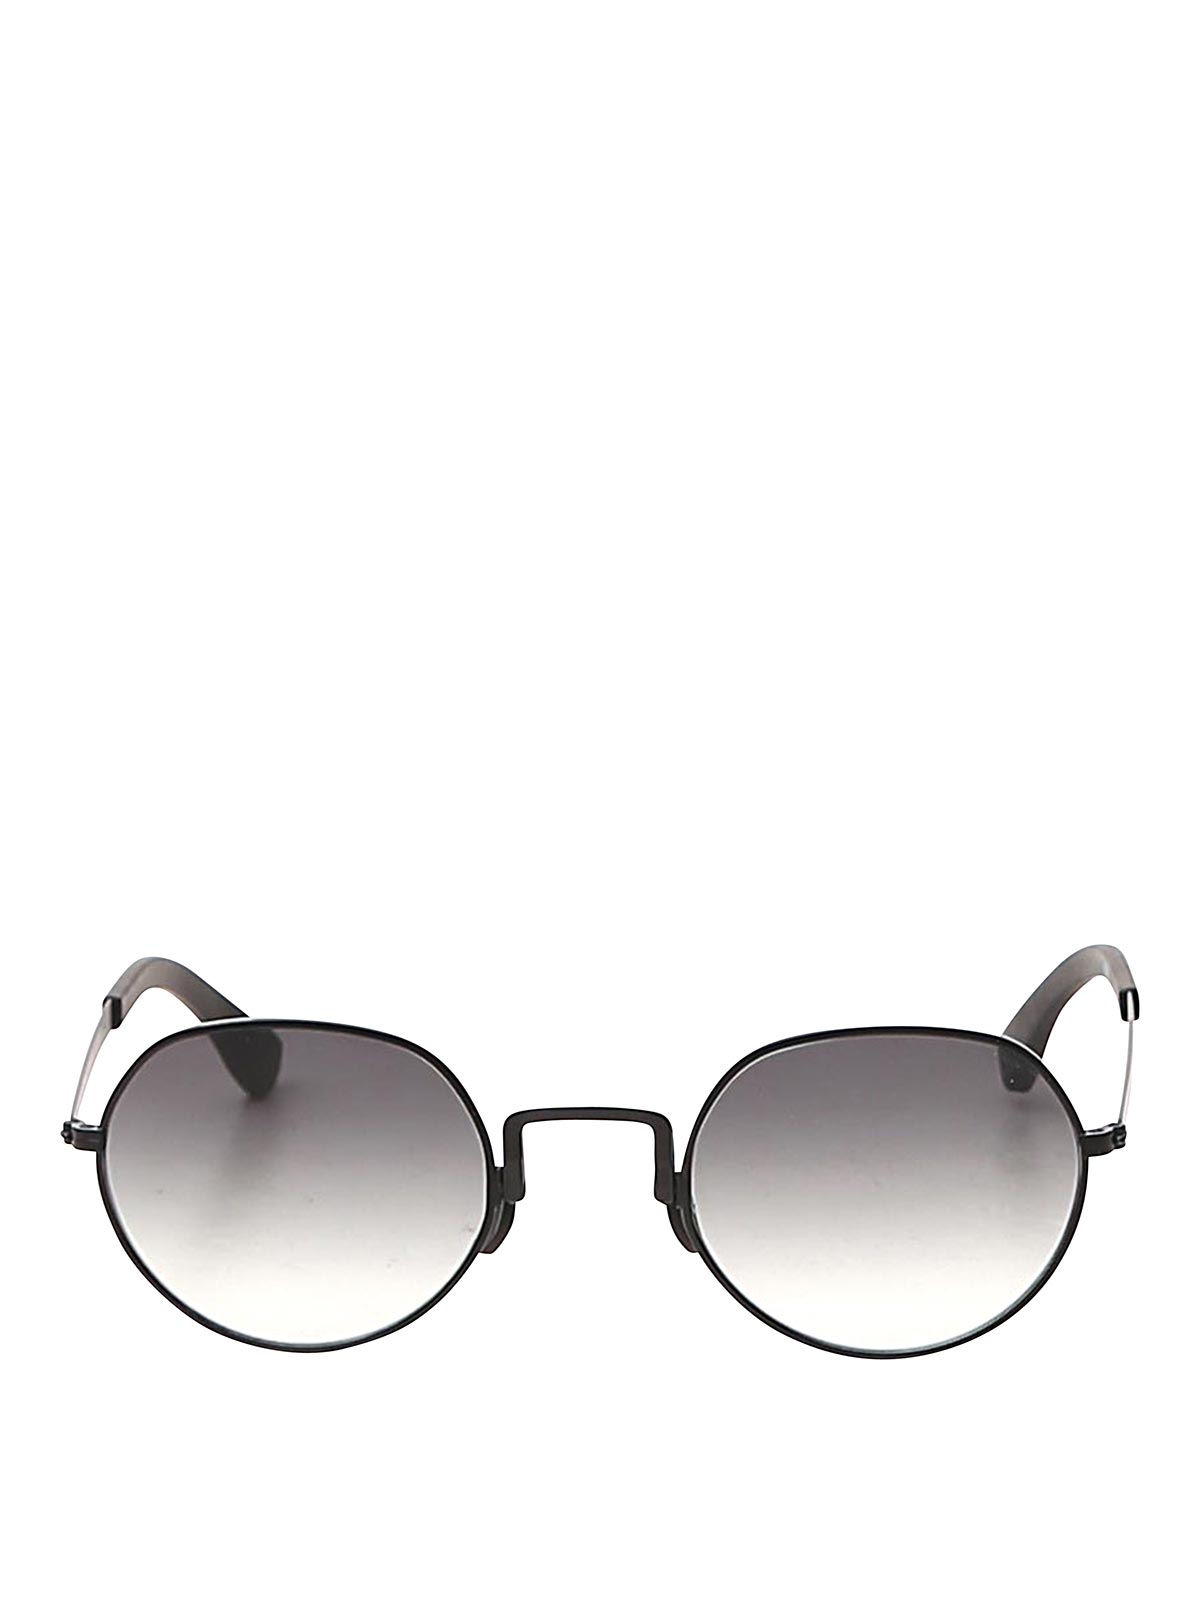 Movitra Sunglasses In Gray